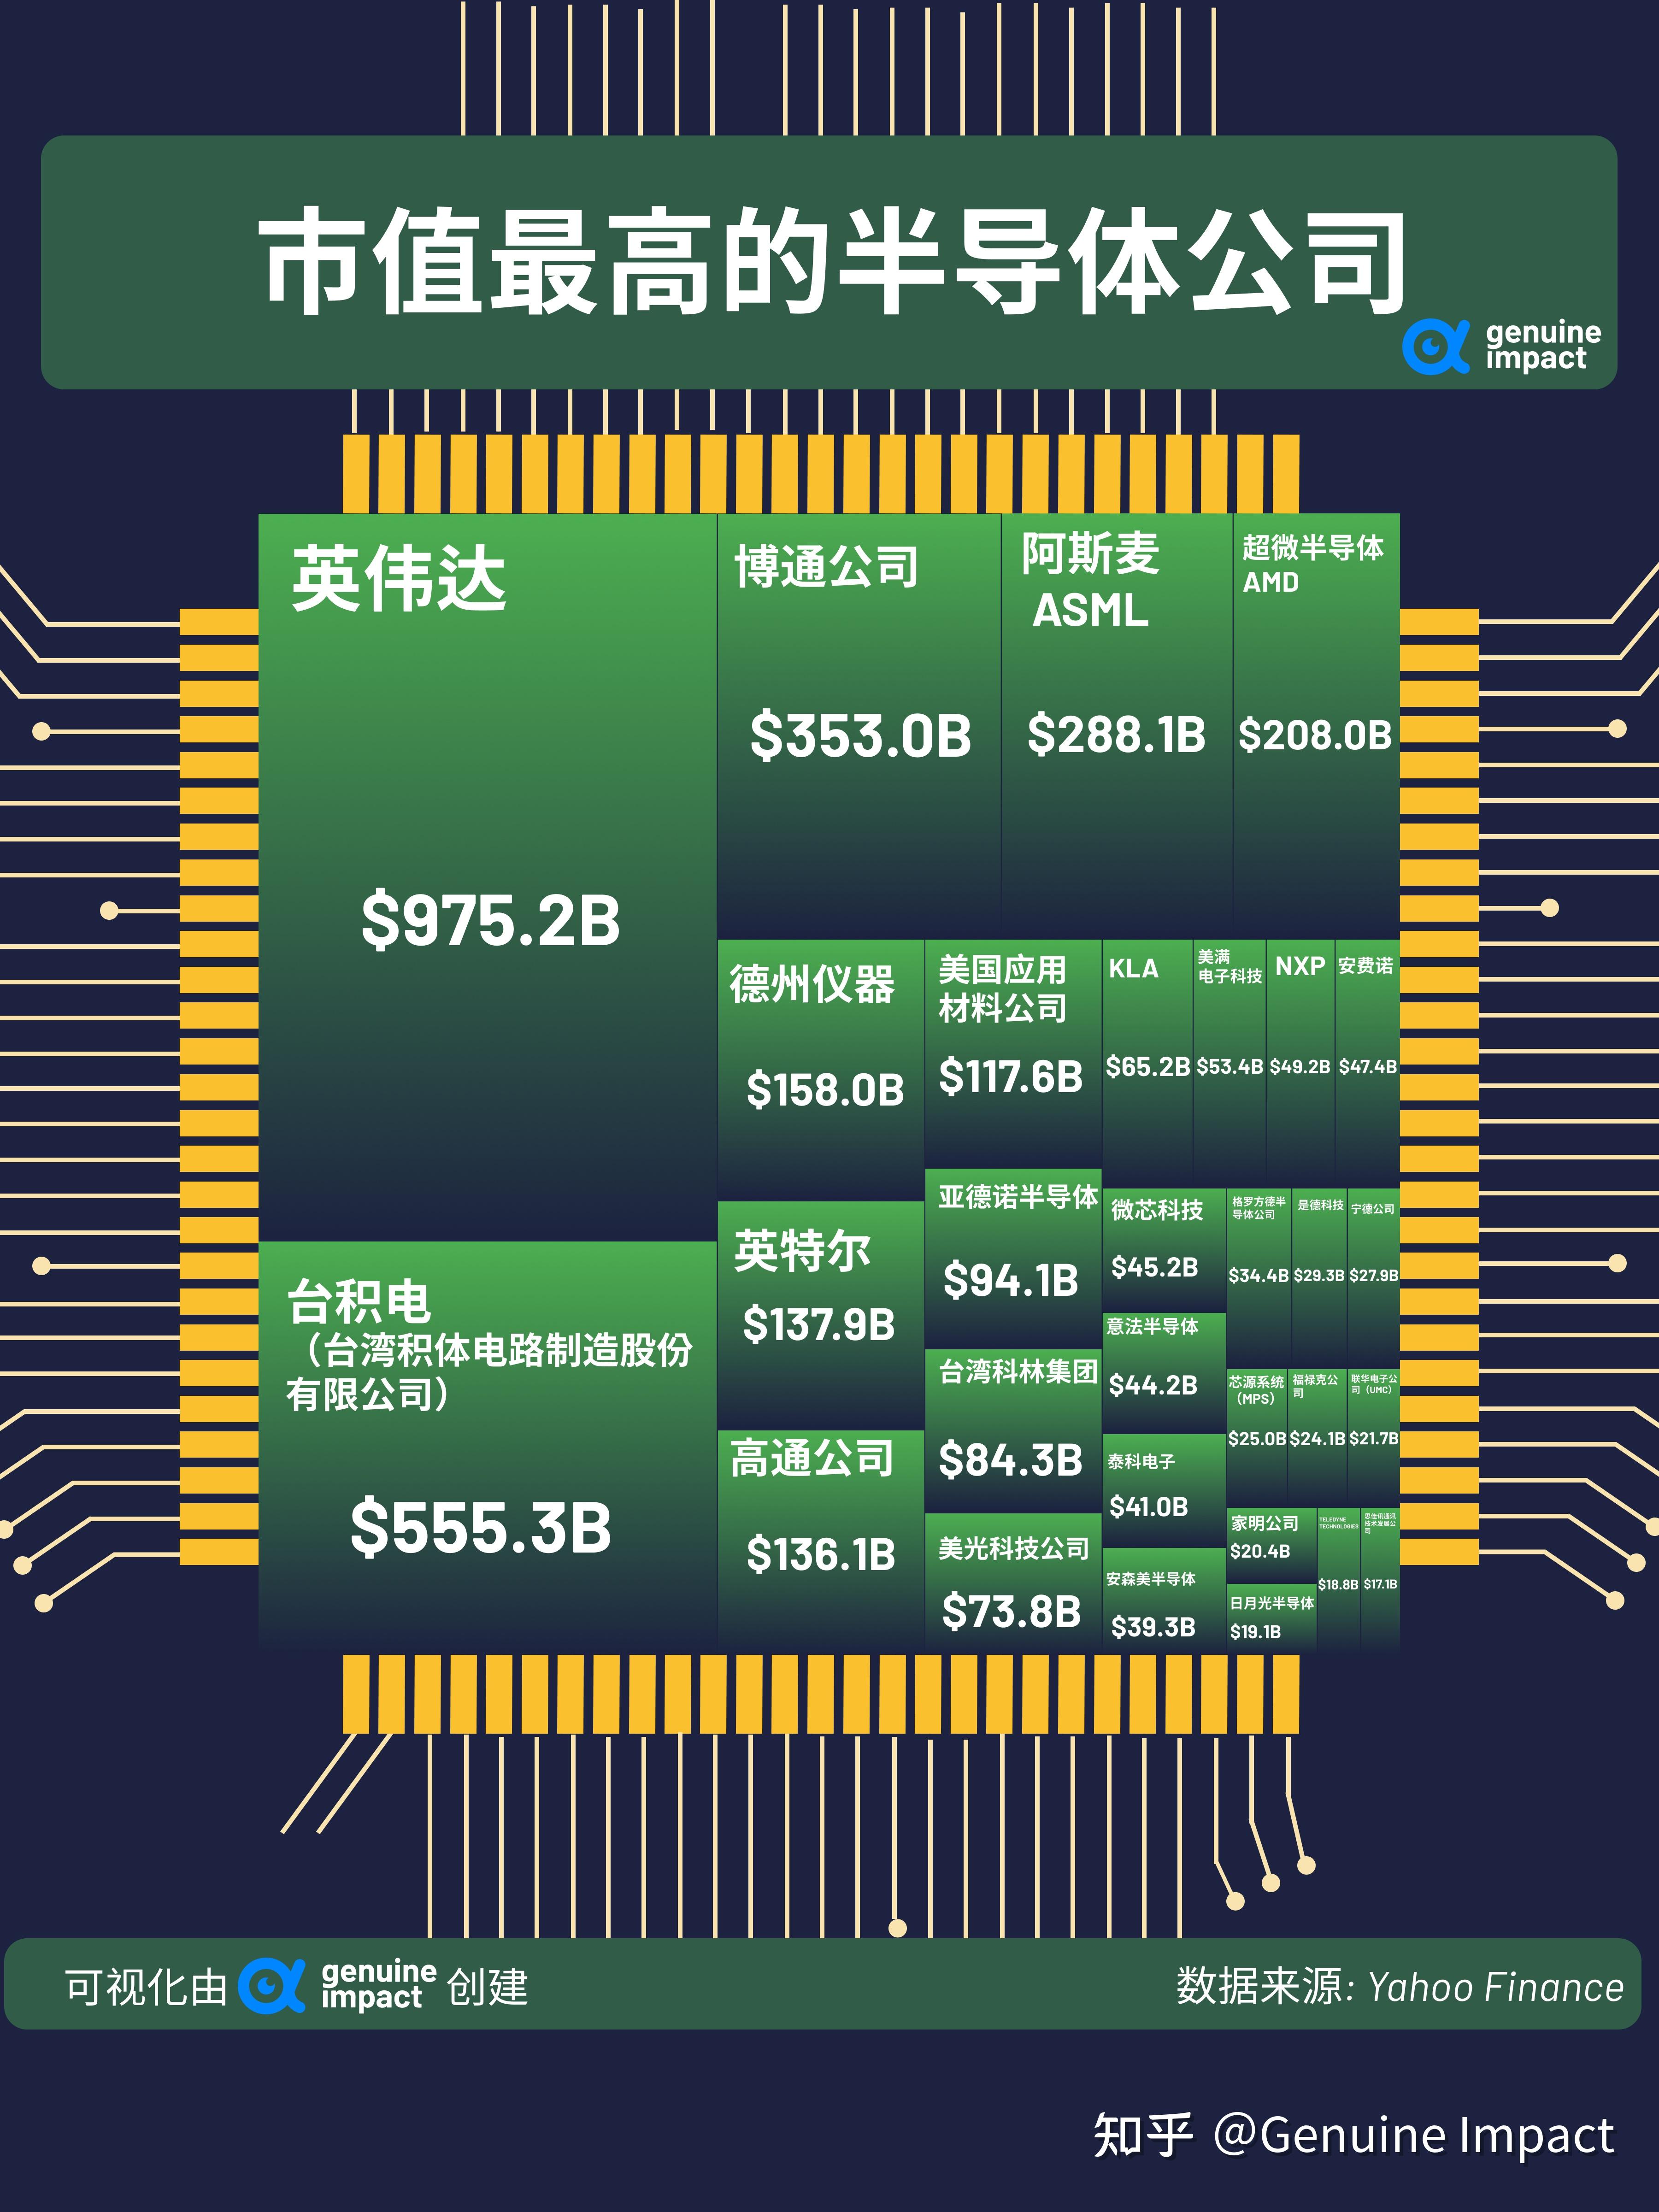 全球十大芯片公司排名详解（高通第1，英伟达第2，中国有4家上榜）-掘金网